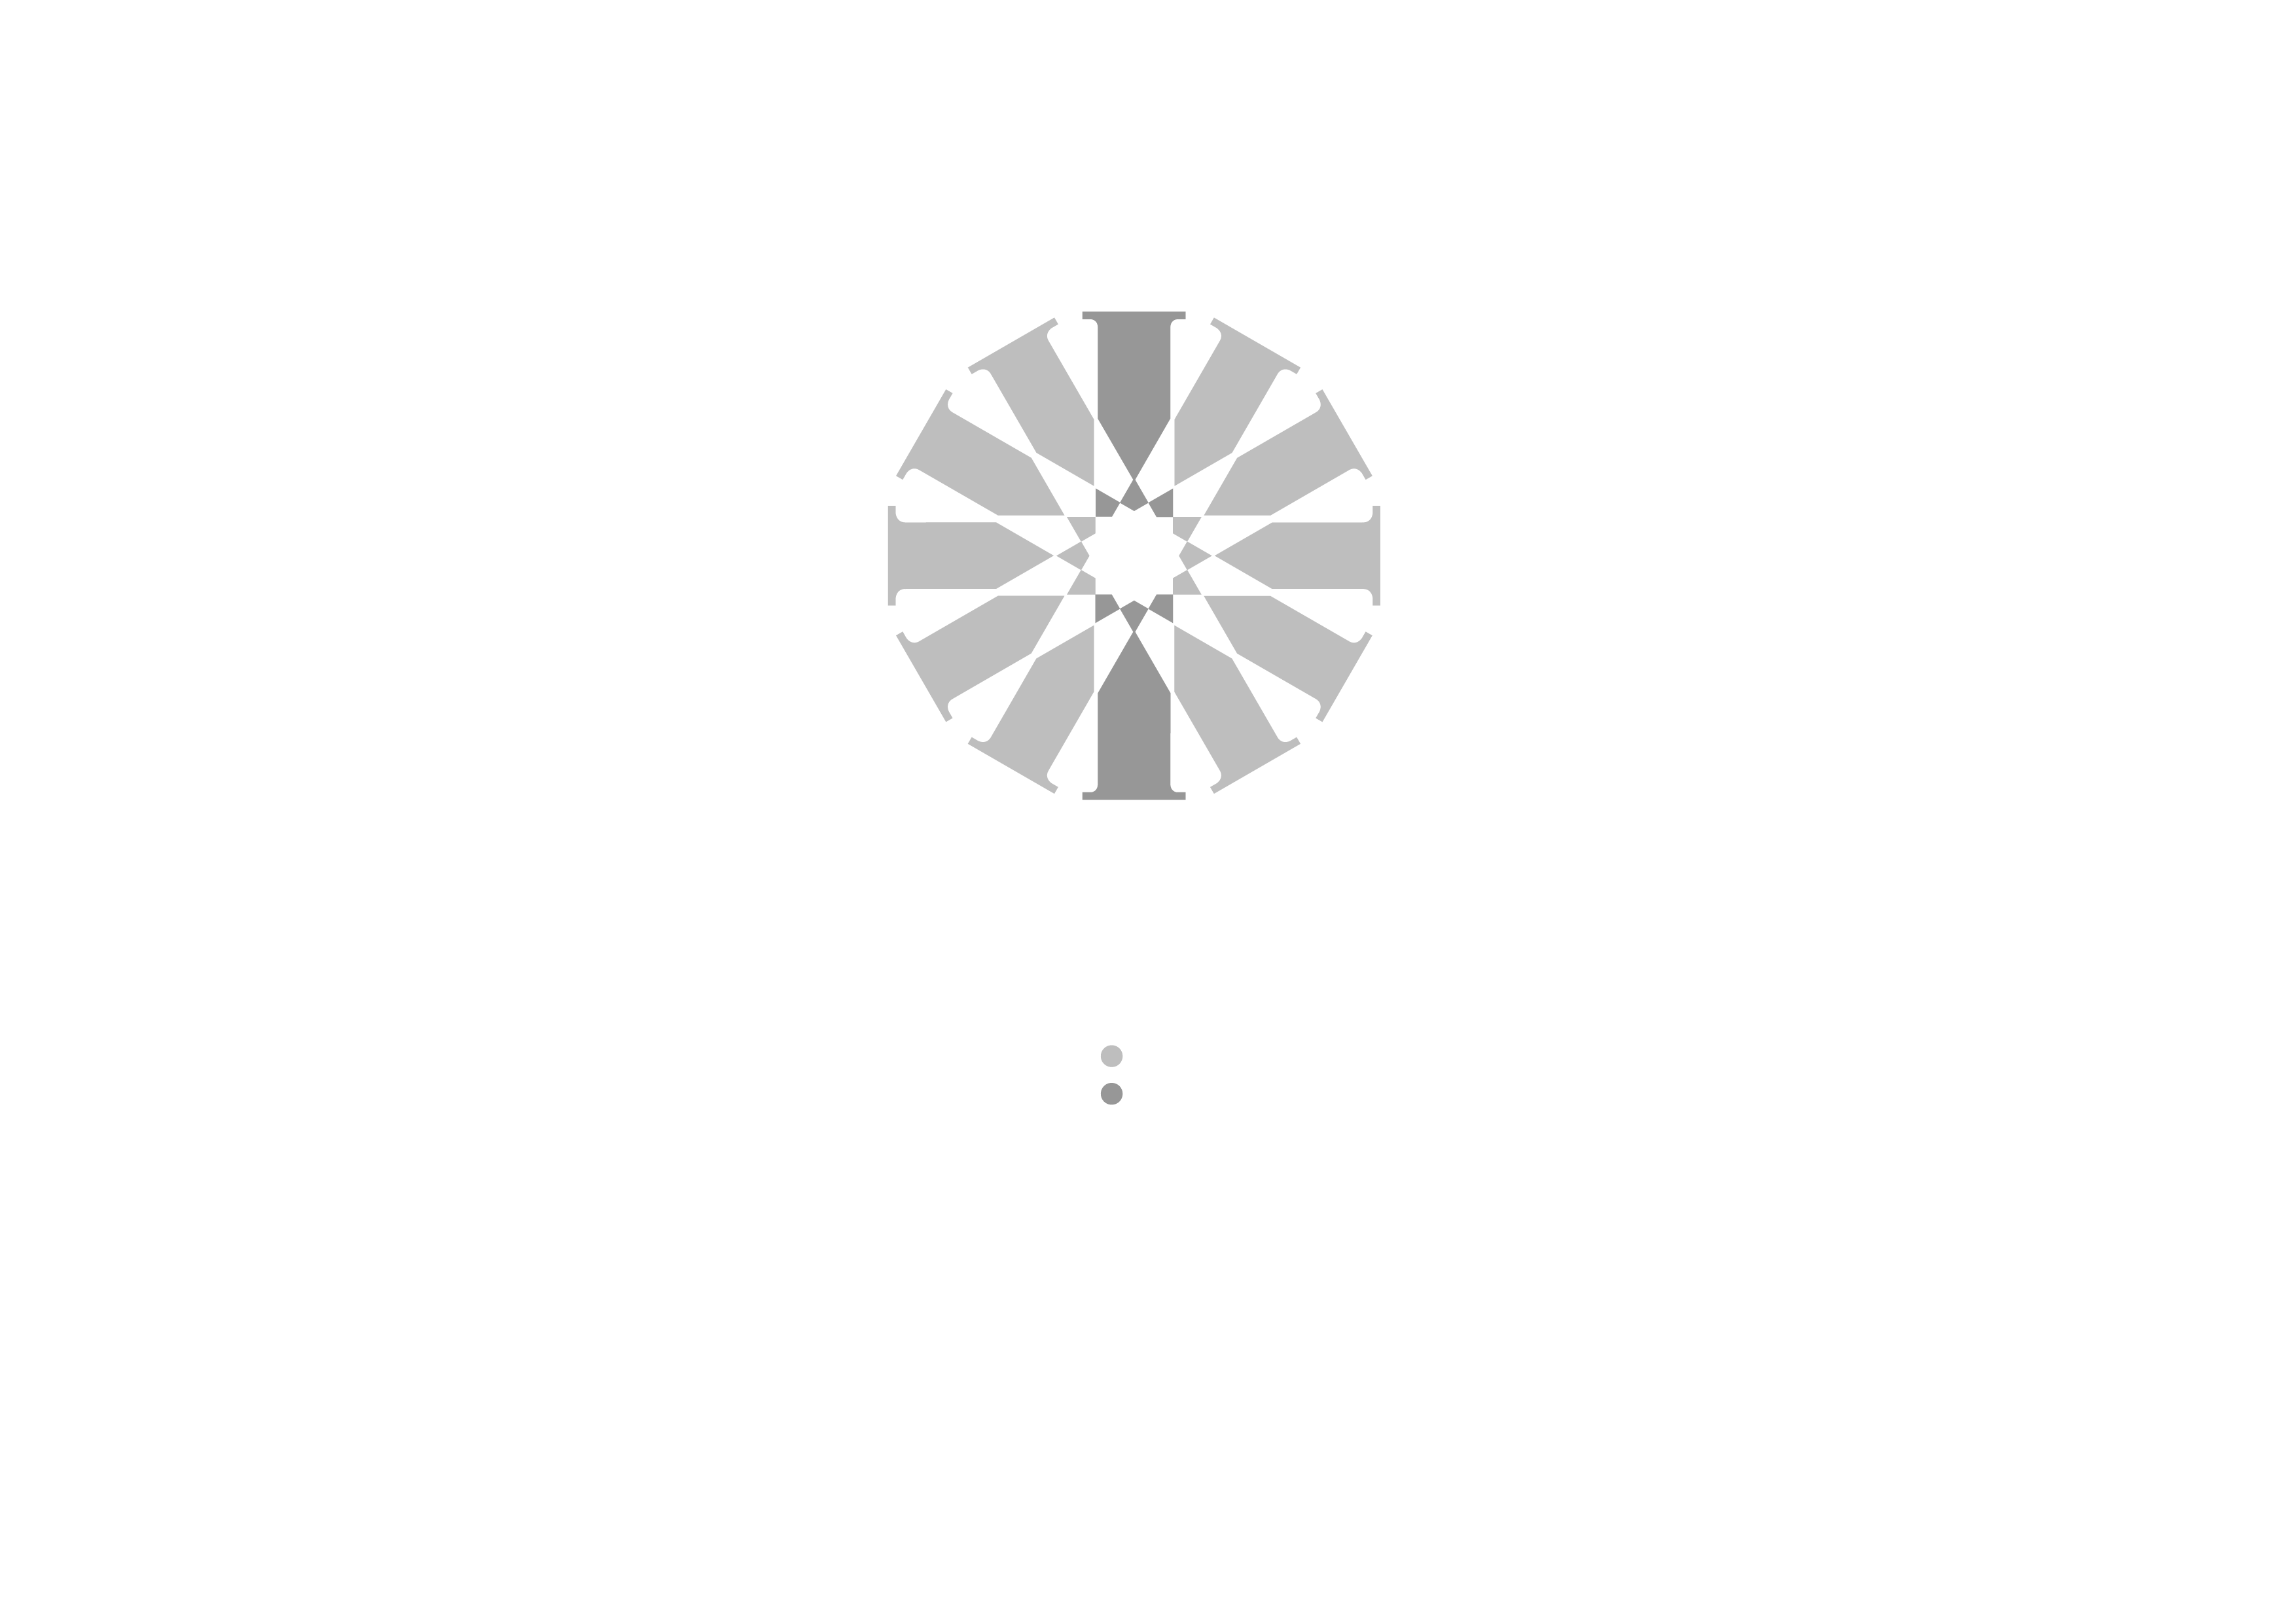 Fondazione Italia Patria della Bellezza